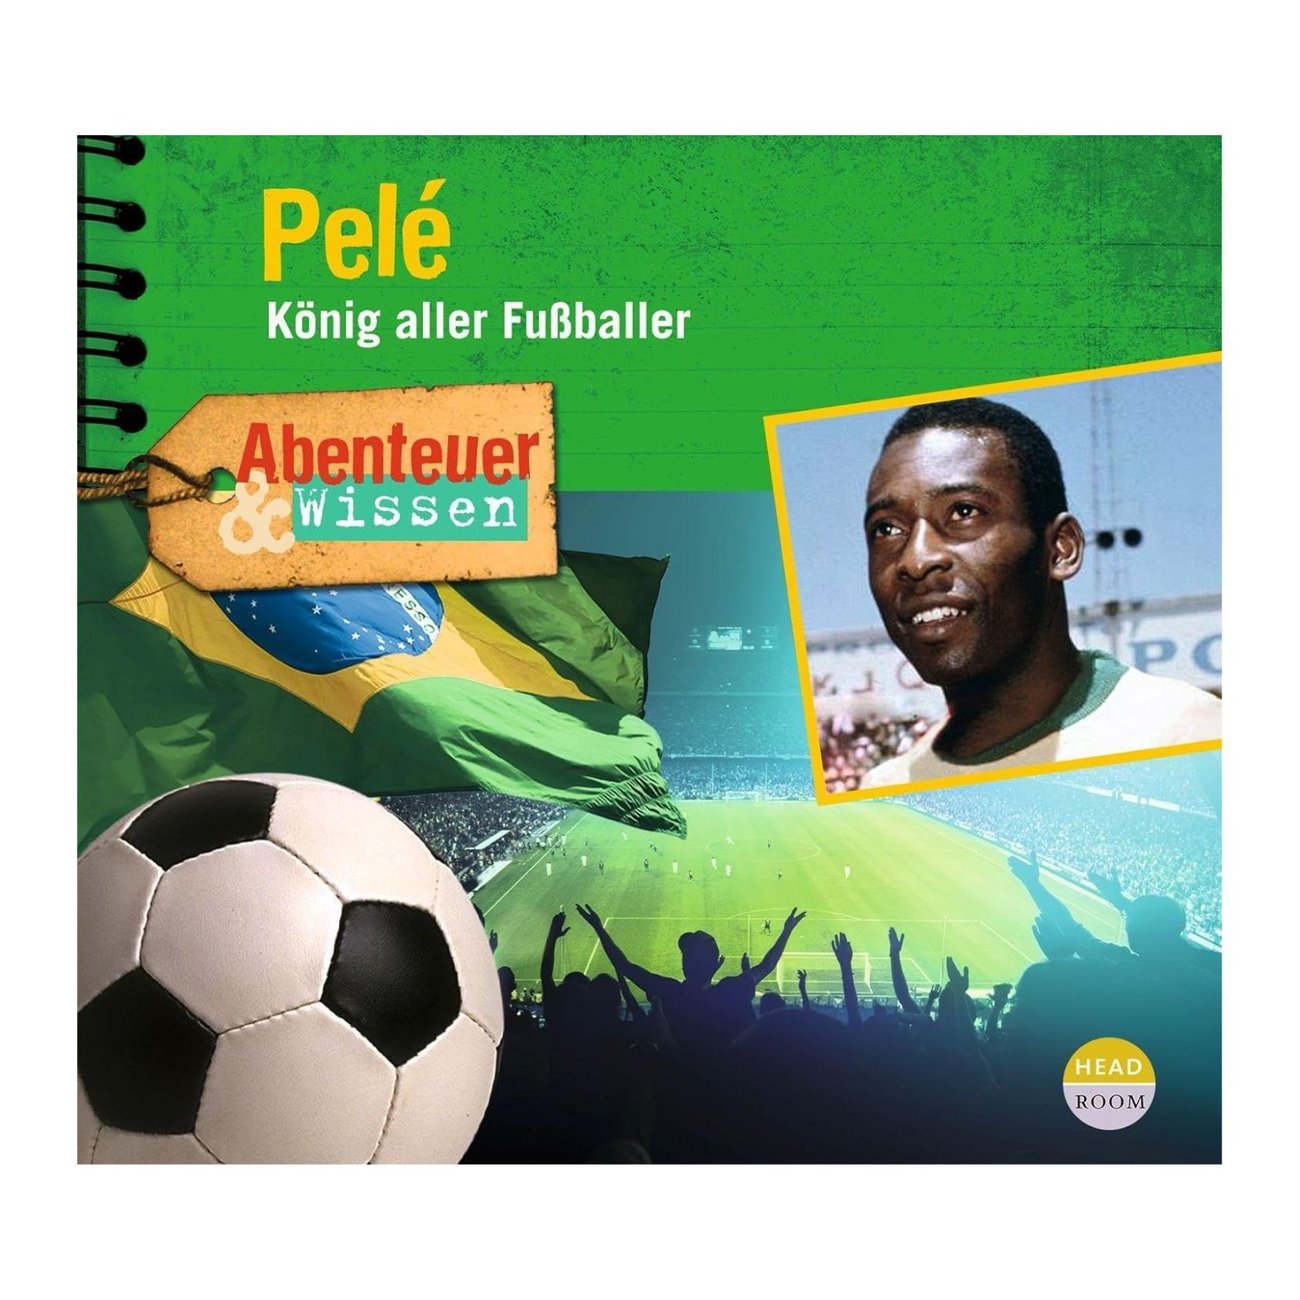 Abenteuer & Wissen: Pelé: König aller Fußballer